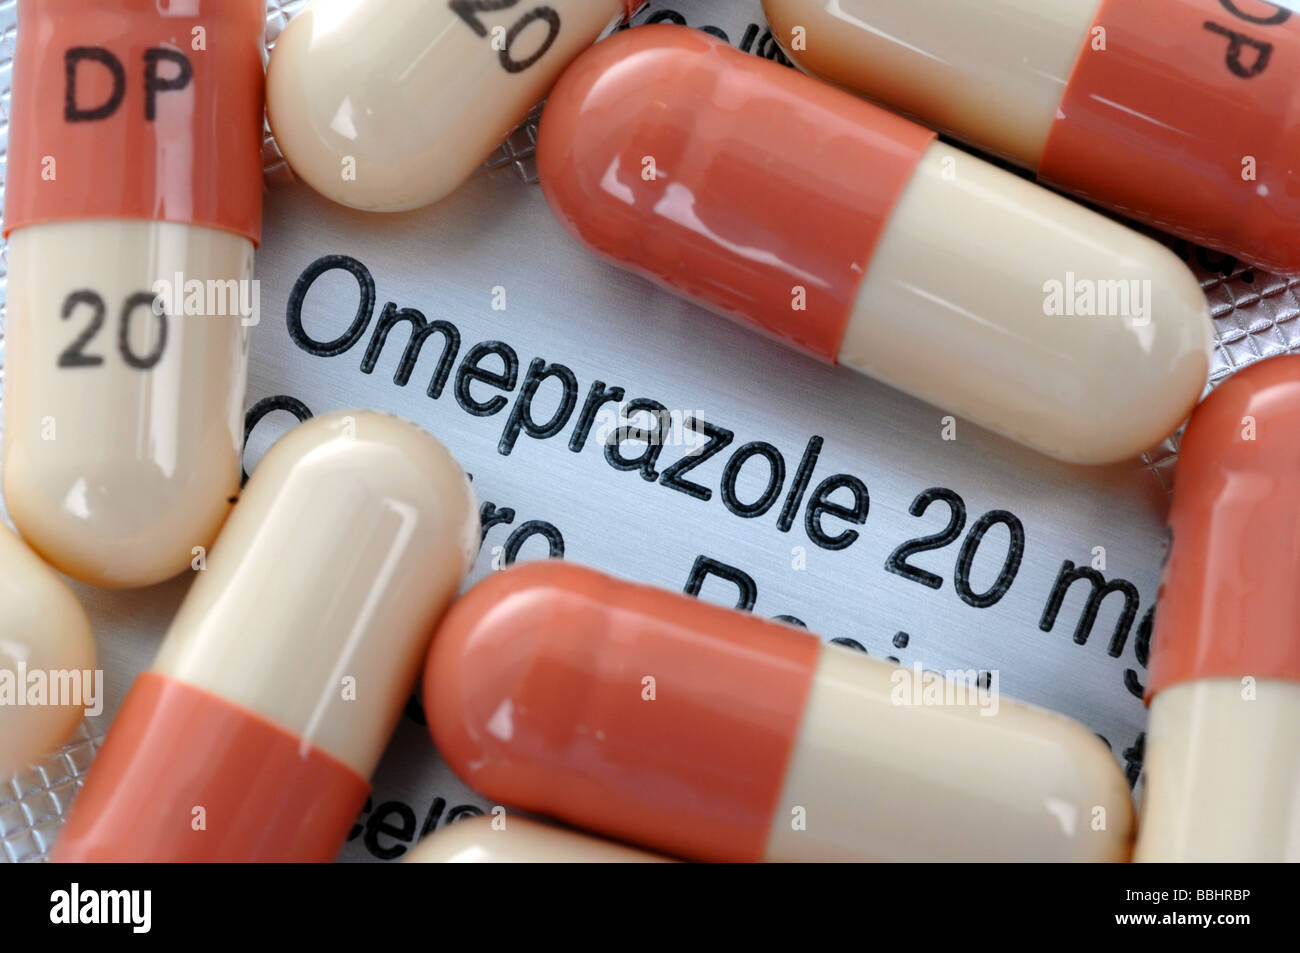 ยา omeprazole 20mg online